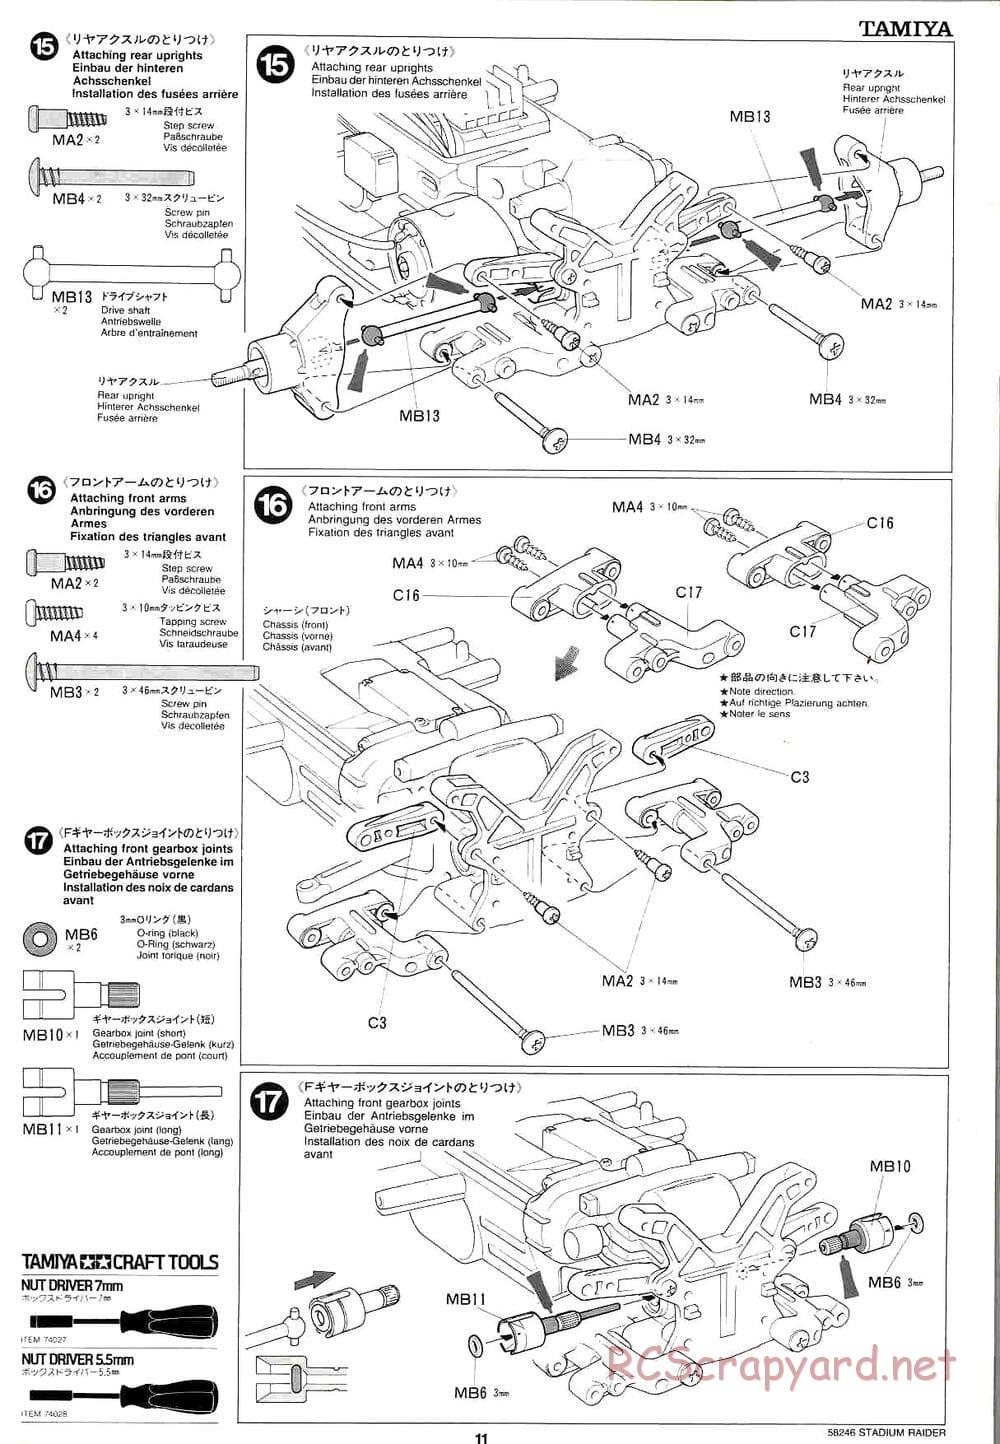 Tamiya - Stadium Raider - TL-01 Chassis - Manual - Page 11